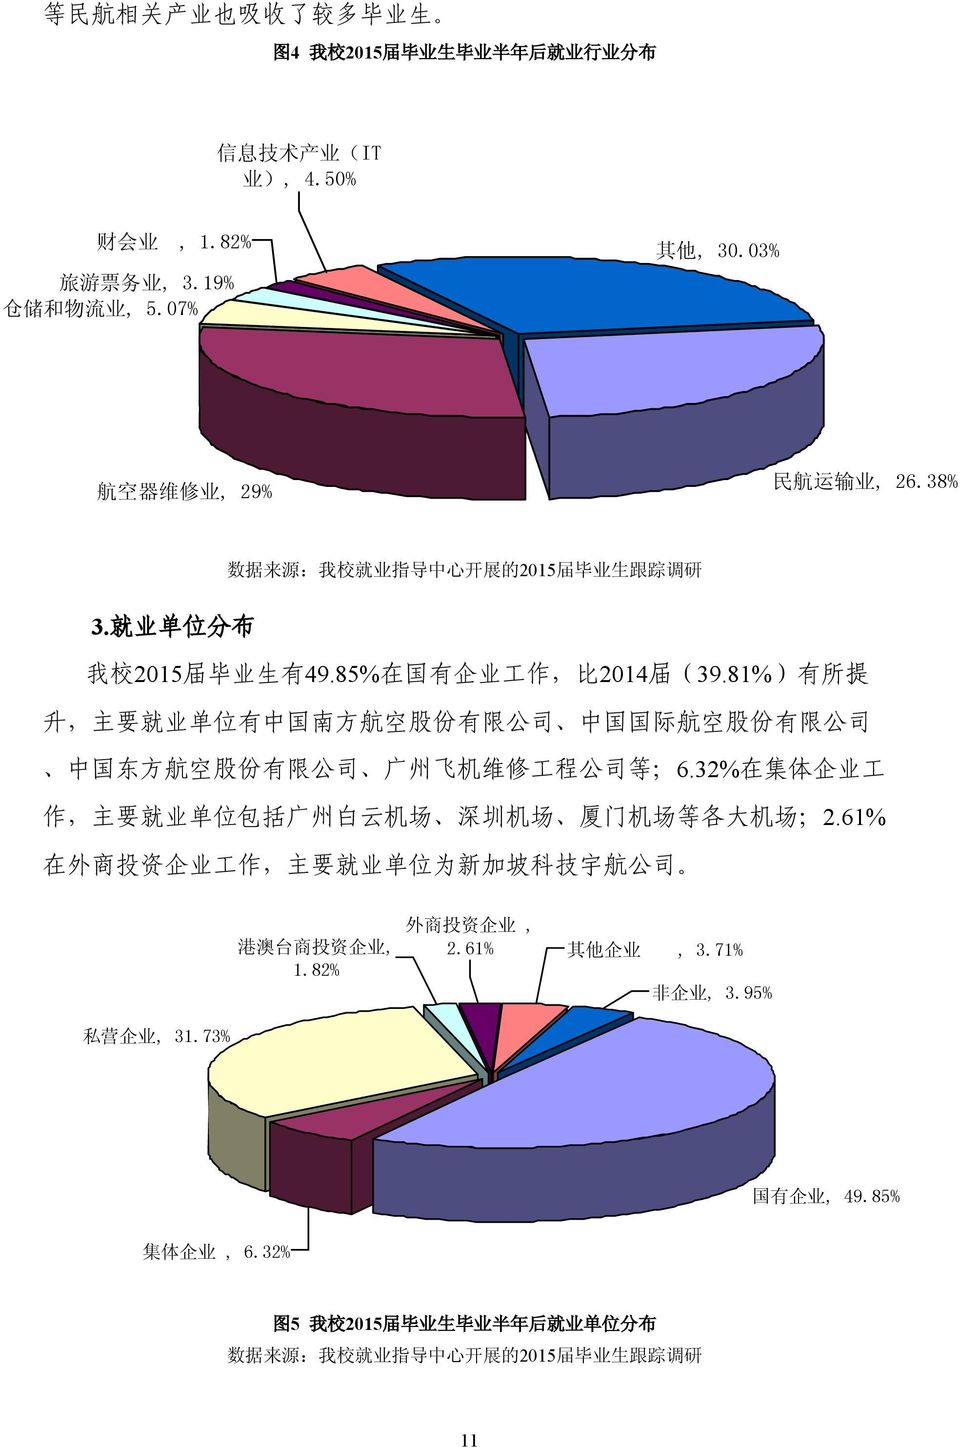 81%) 有 所 提 升, 主 要 就 业 单 位 有 中 国 南 方 航 空 股 份 有 限 公 司 中 国 国 际 航 空 股 份 有 限 公 司 中 国 东 方 航 空 股 份 有 限 公 司 广 州 飞 机 维 修 工 程 公 司 等 ;6.